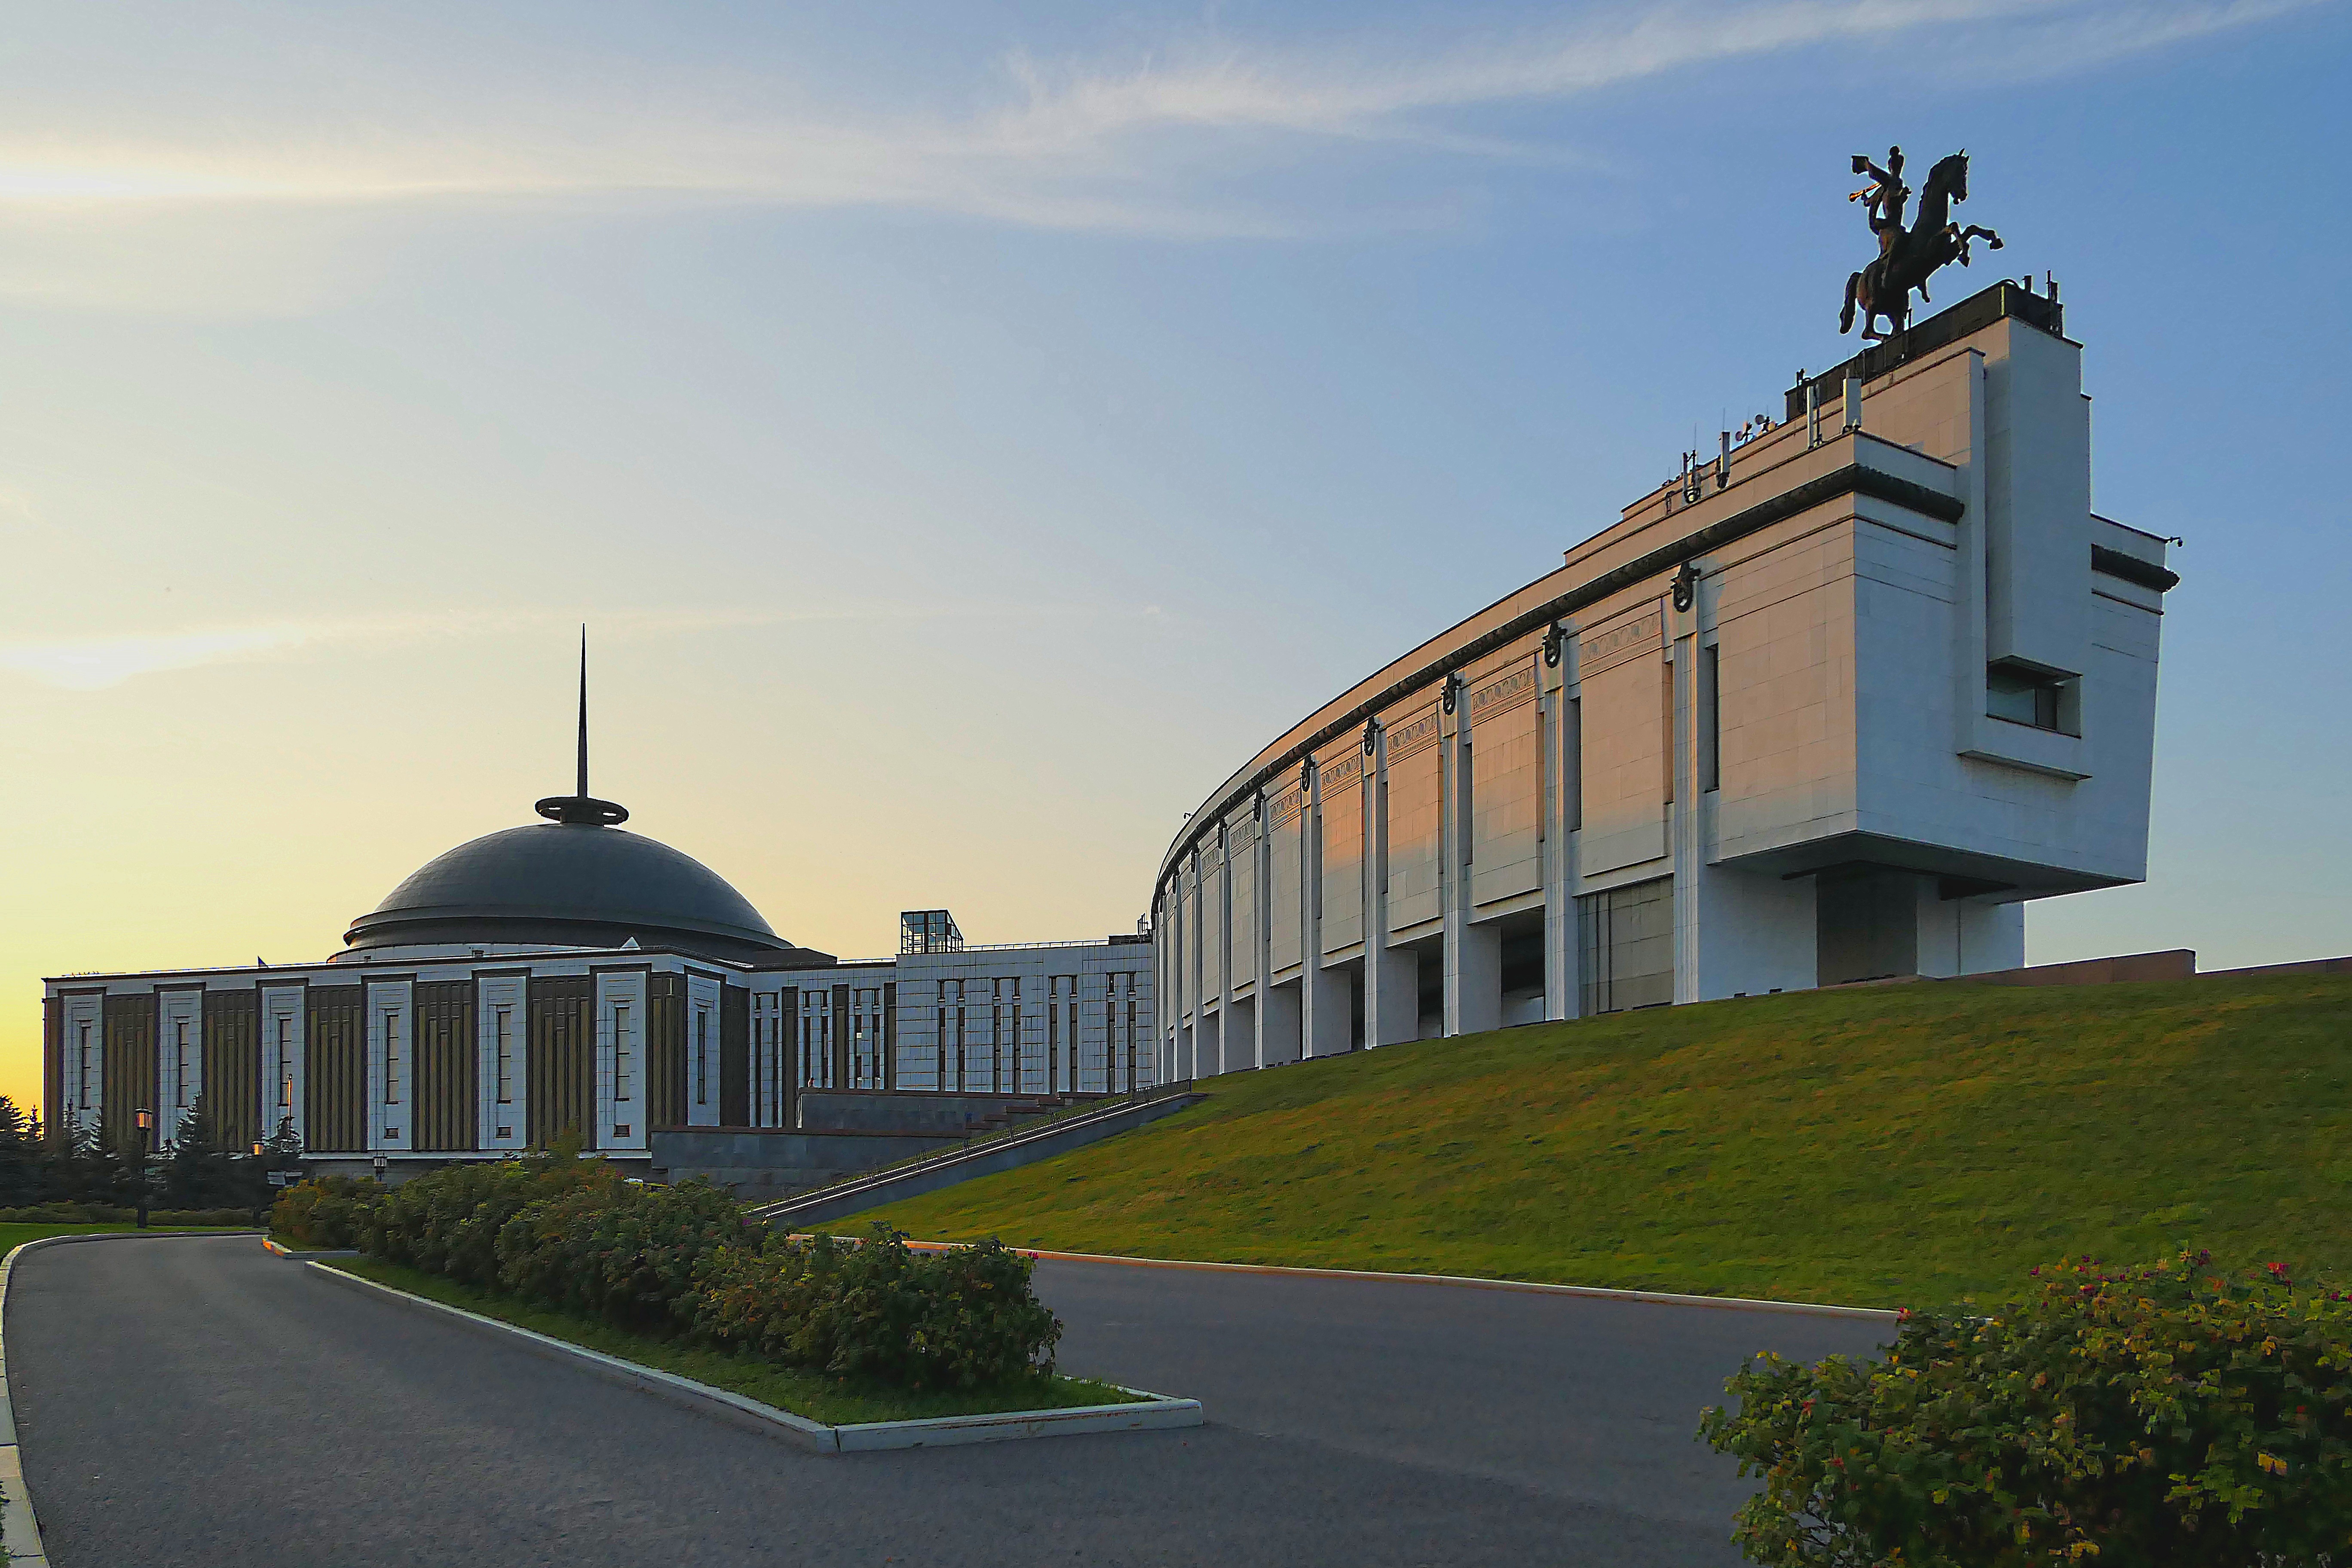 Музей победы на поклонной горе в москве фото